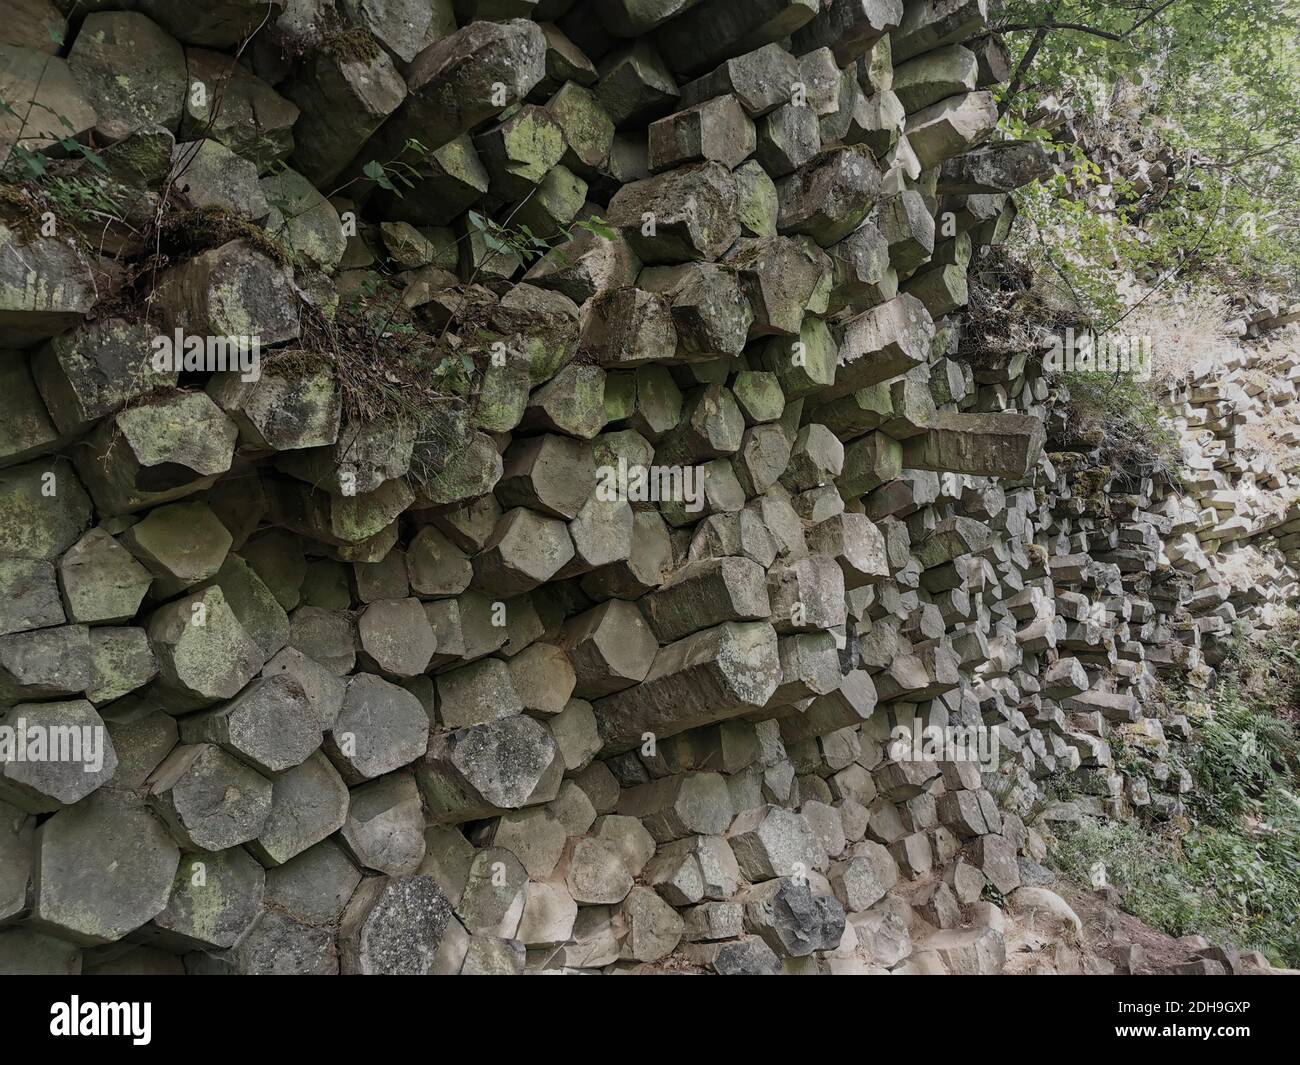 Le mur de prisme de basalte à Gangolfsberg se compose de colonnes de basalte empilées en bois d'un diamètre de 30 à 40 cm, Oberelsbach, comté de Rhön-Grabfeld, Bavière Banque D'Images